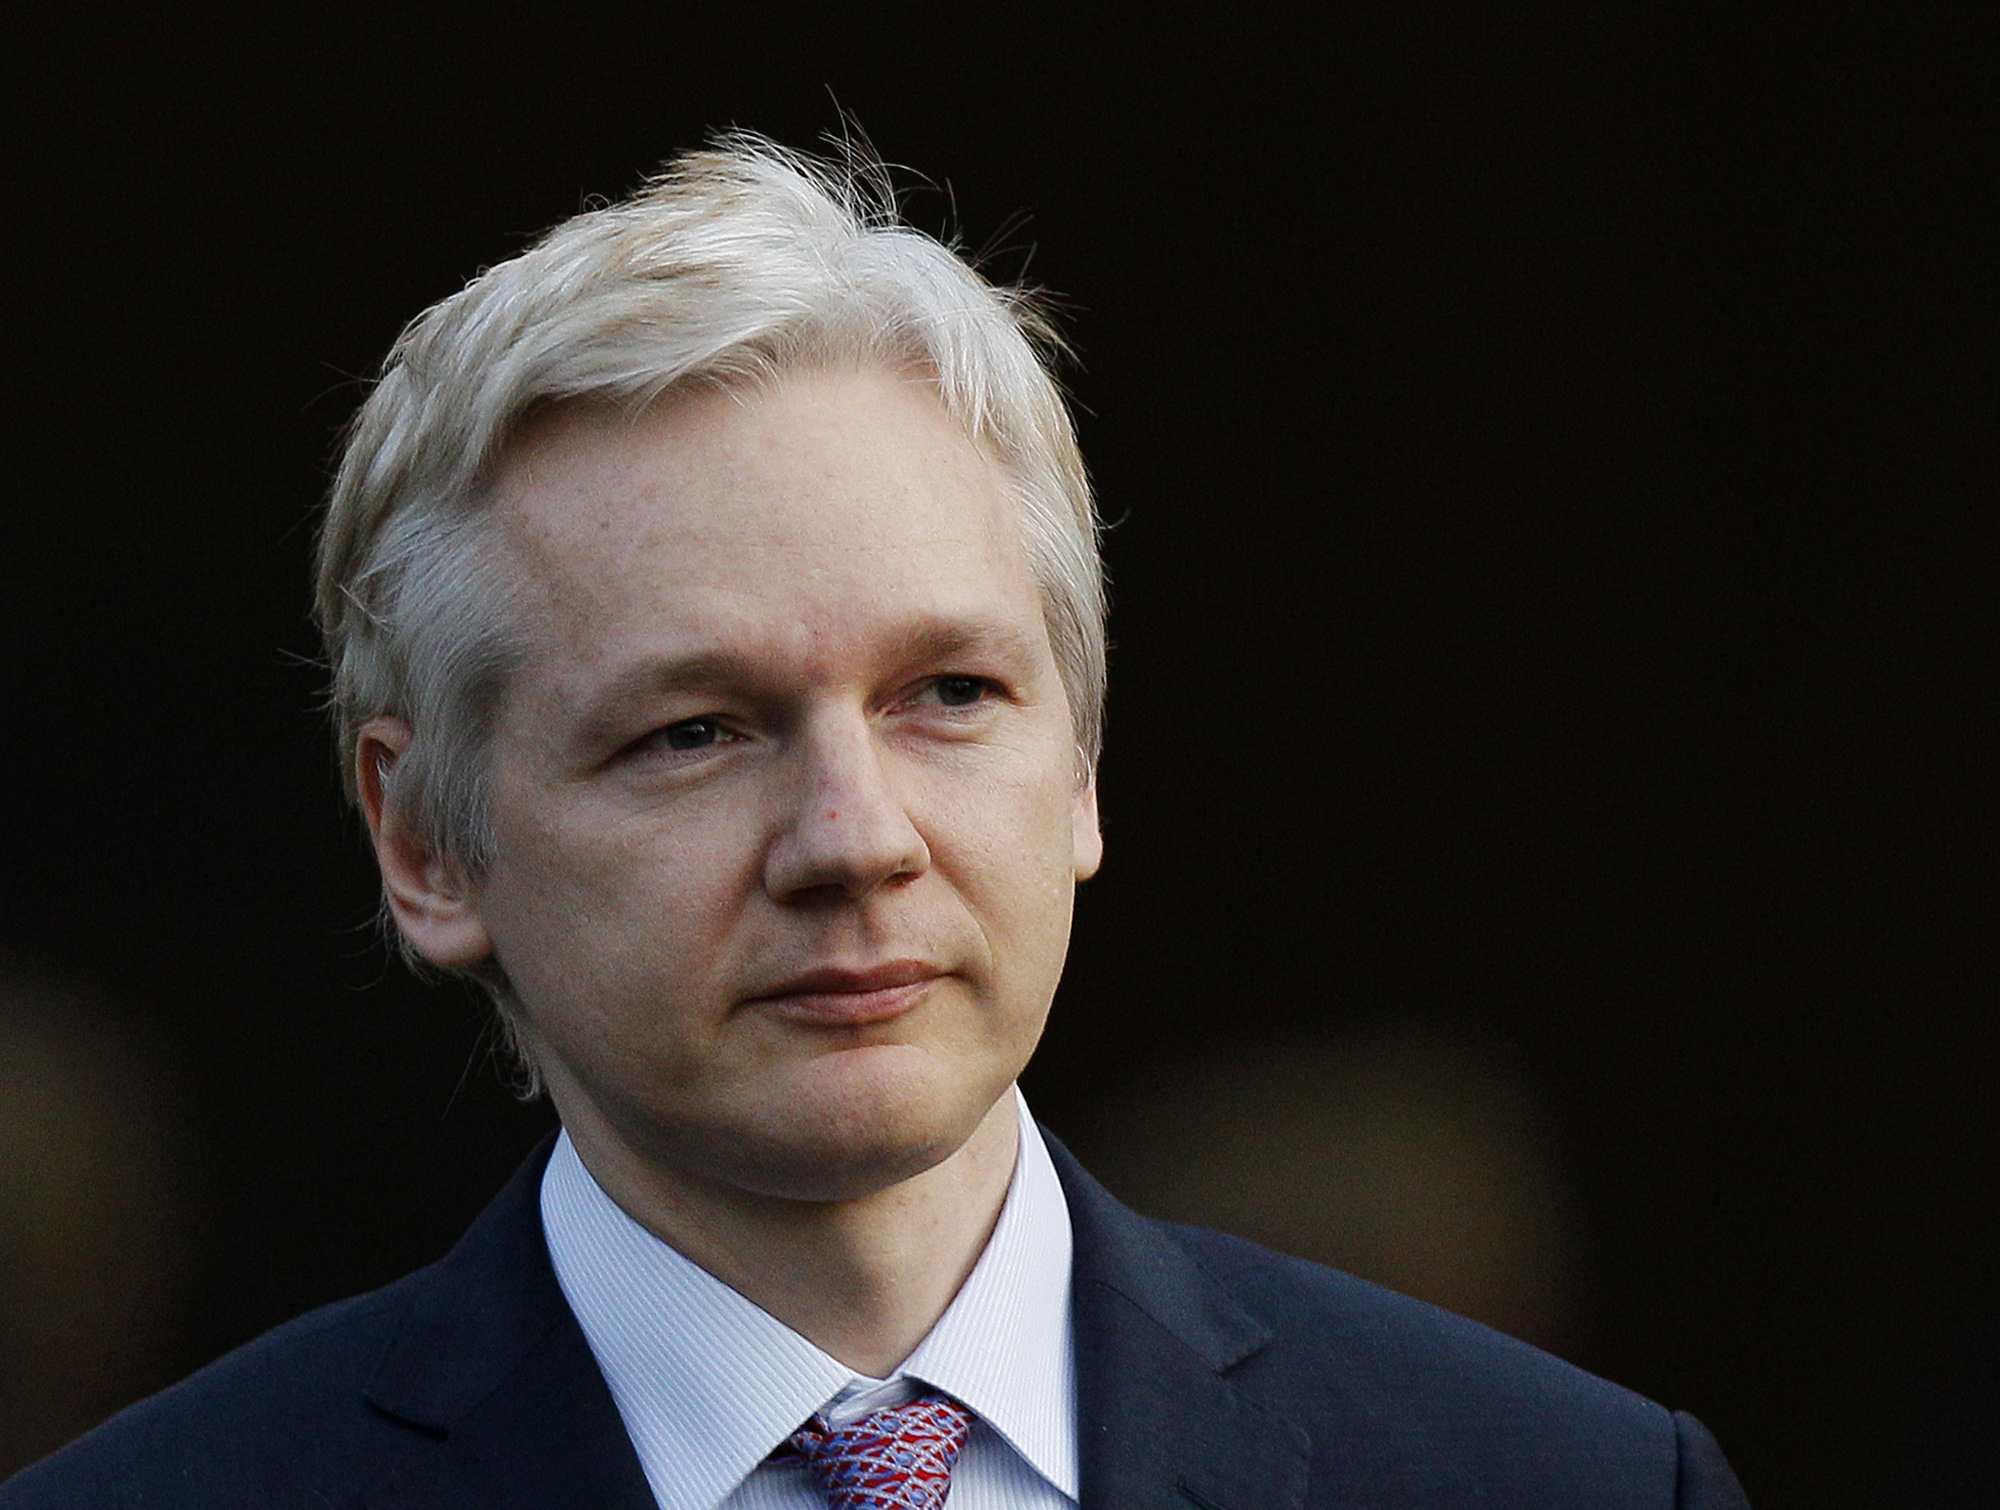 Onsdagen kan bli en ödesdag för Wikileaksgrundaren Julian Assange, men det sista ordet är långtifrån sagt i fallet.